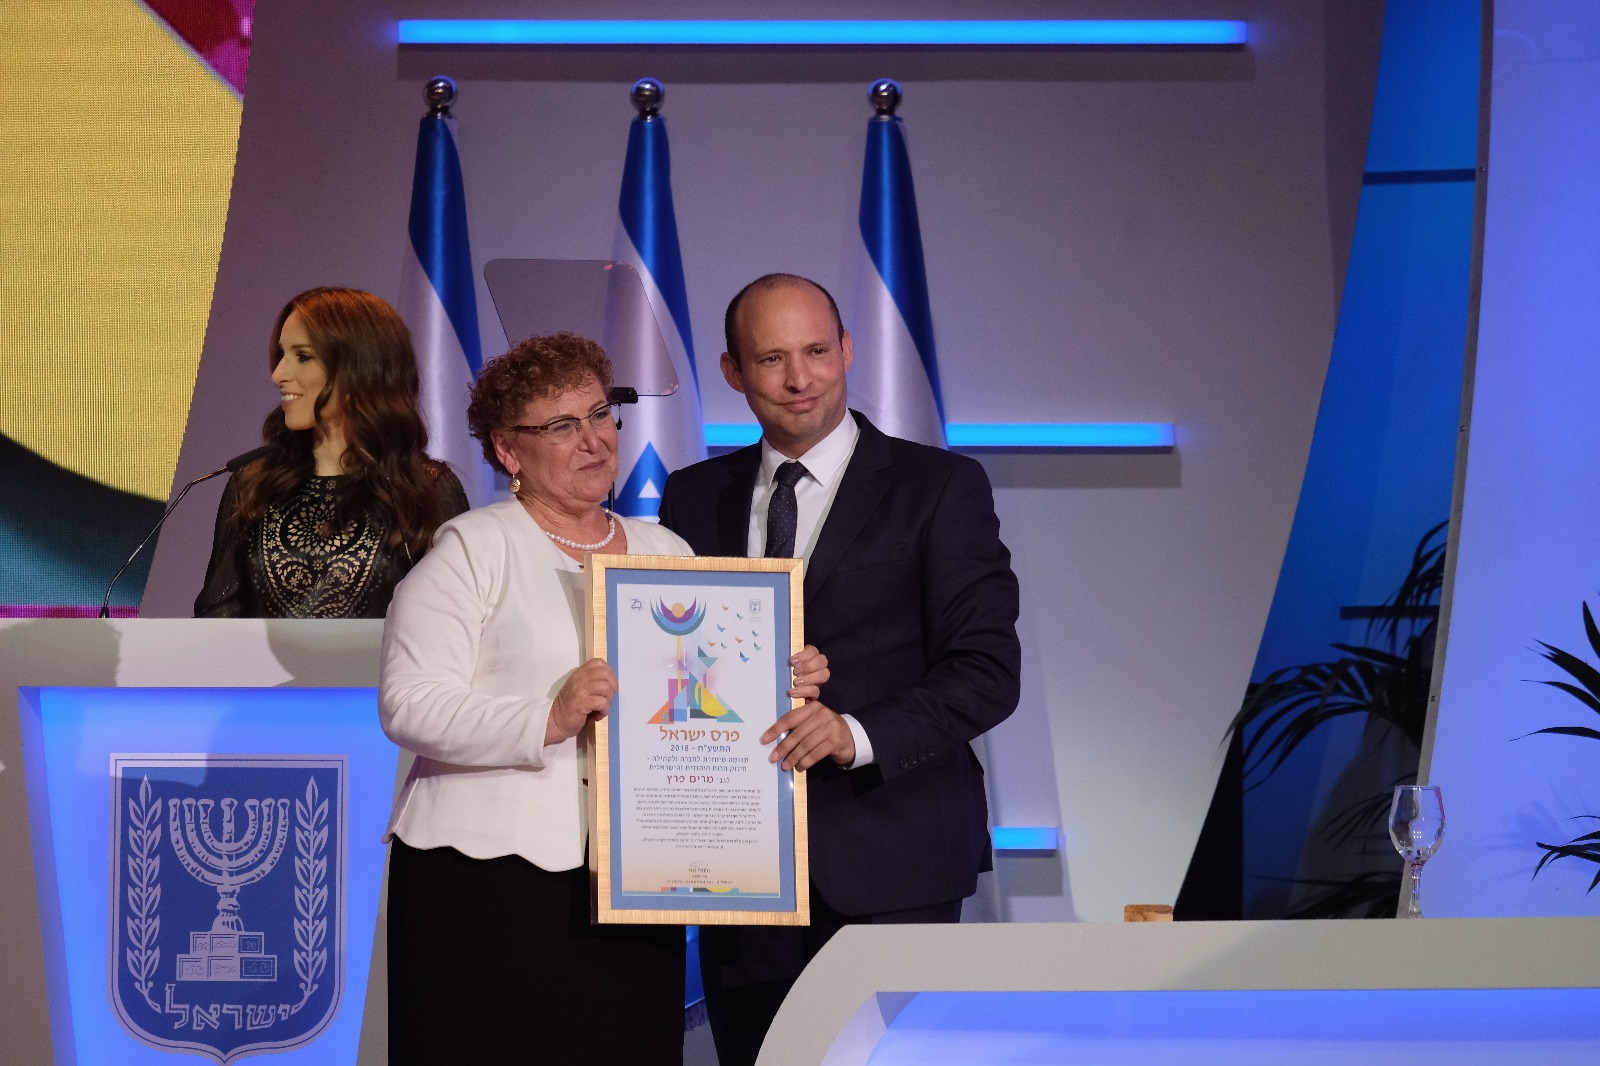 מרים פרץ עם ראש הממשלה נפתלח בנט בקבלת פרס ישראל (צילום: באדיבות מרים פרץ)